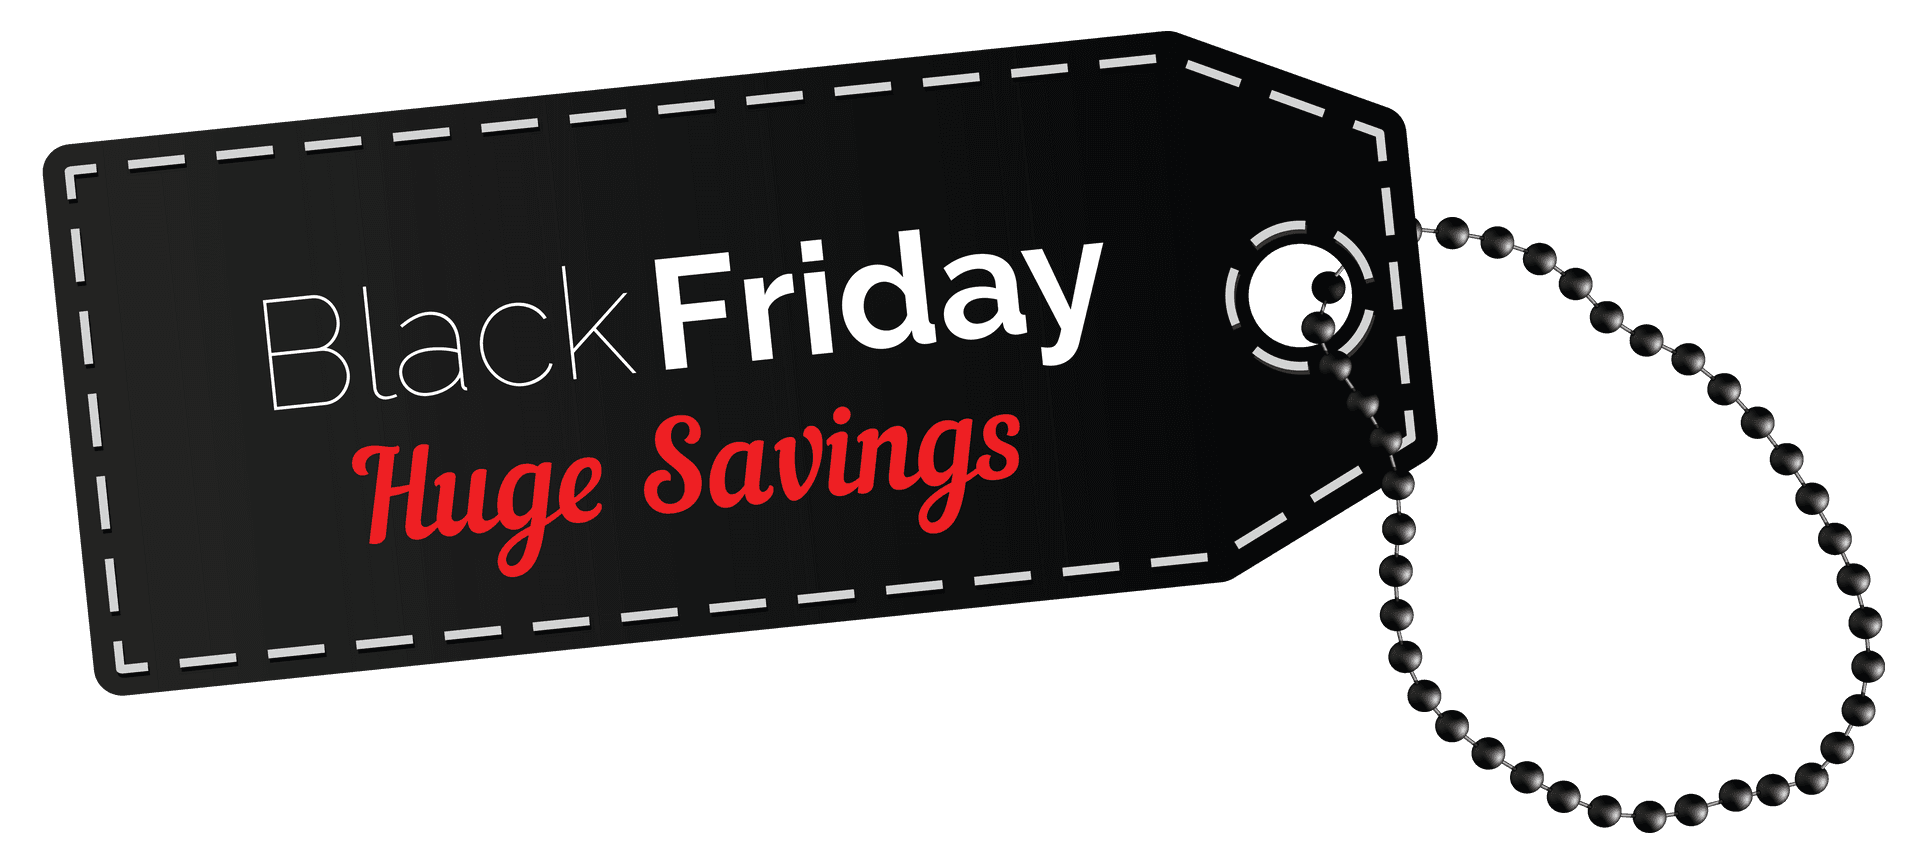 Black Friday Huge Savings